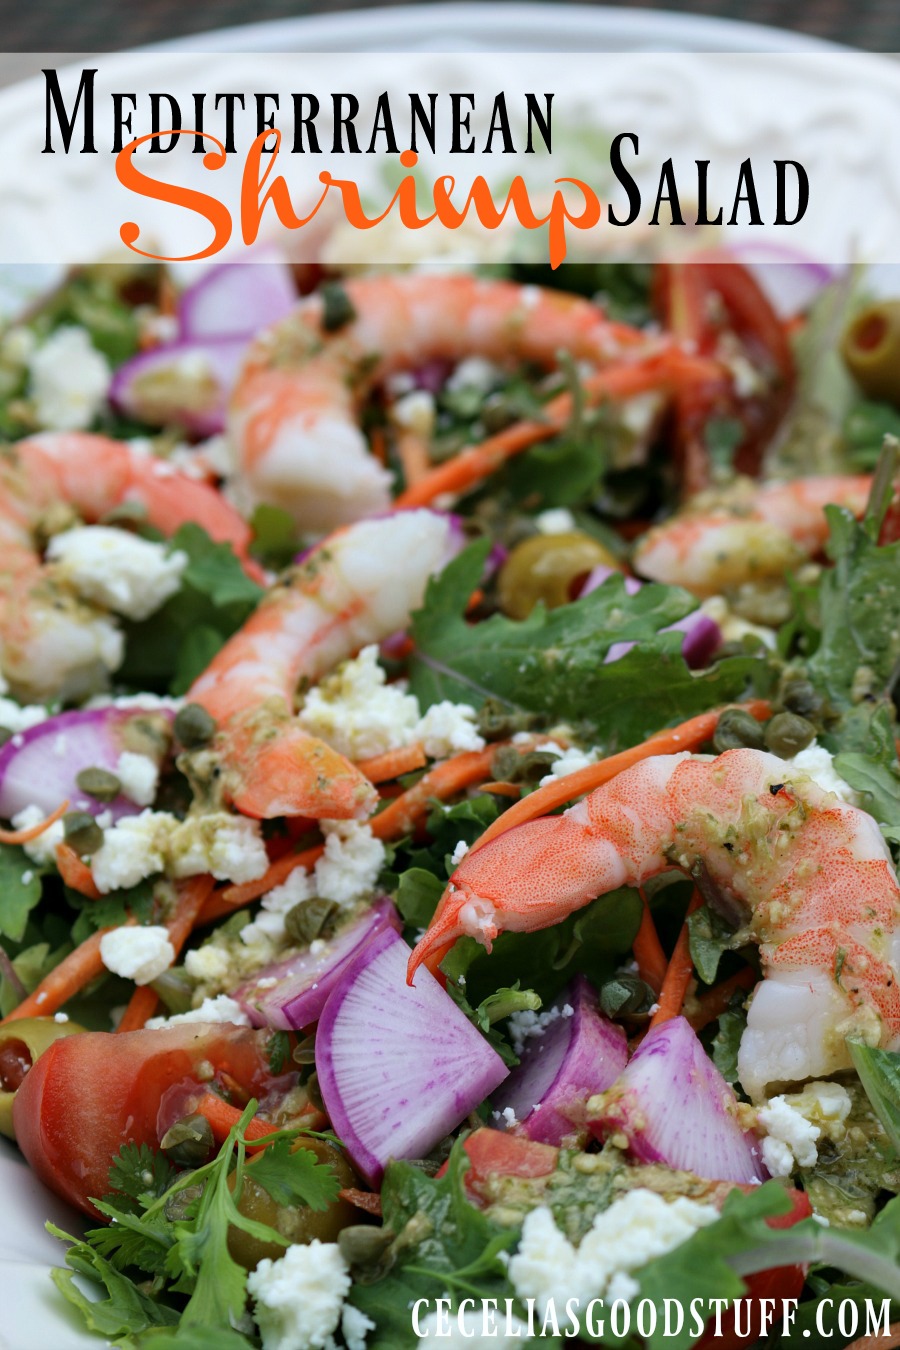 Recipe for Mediterranean Shrimp Salad